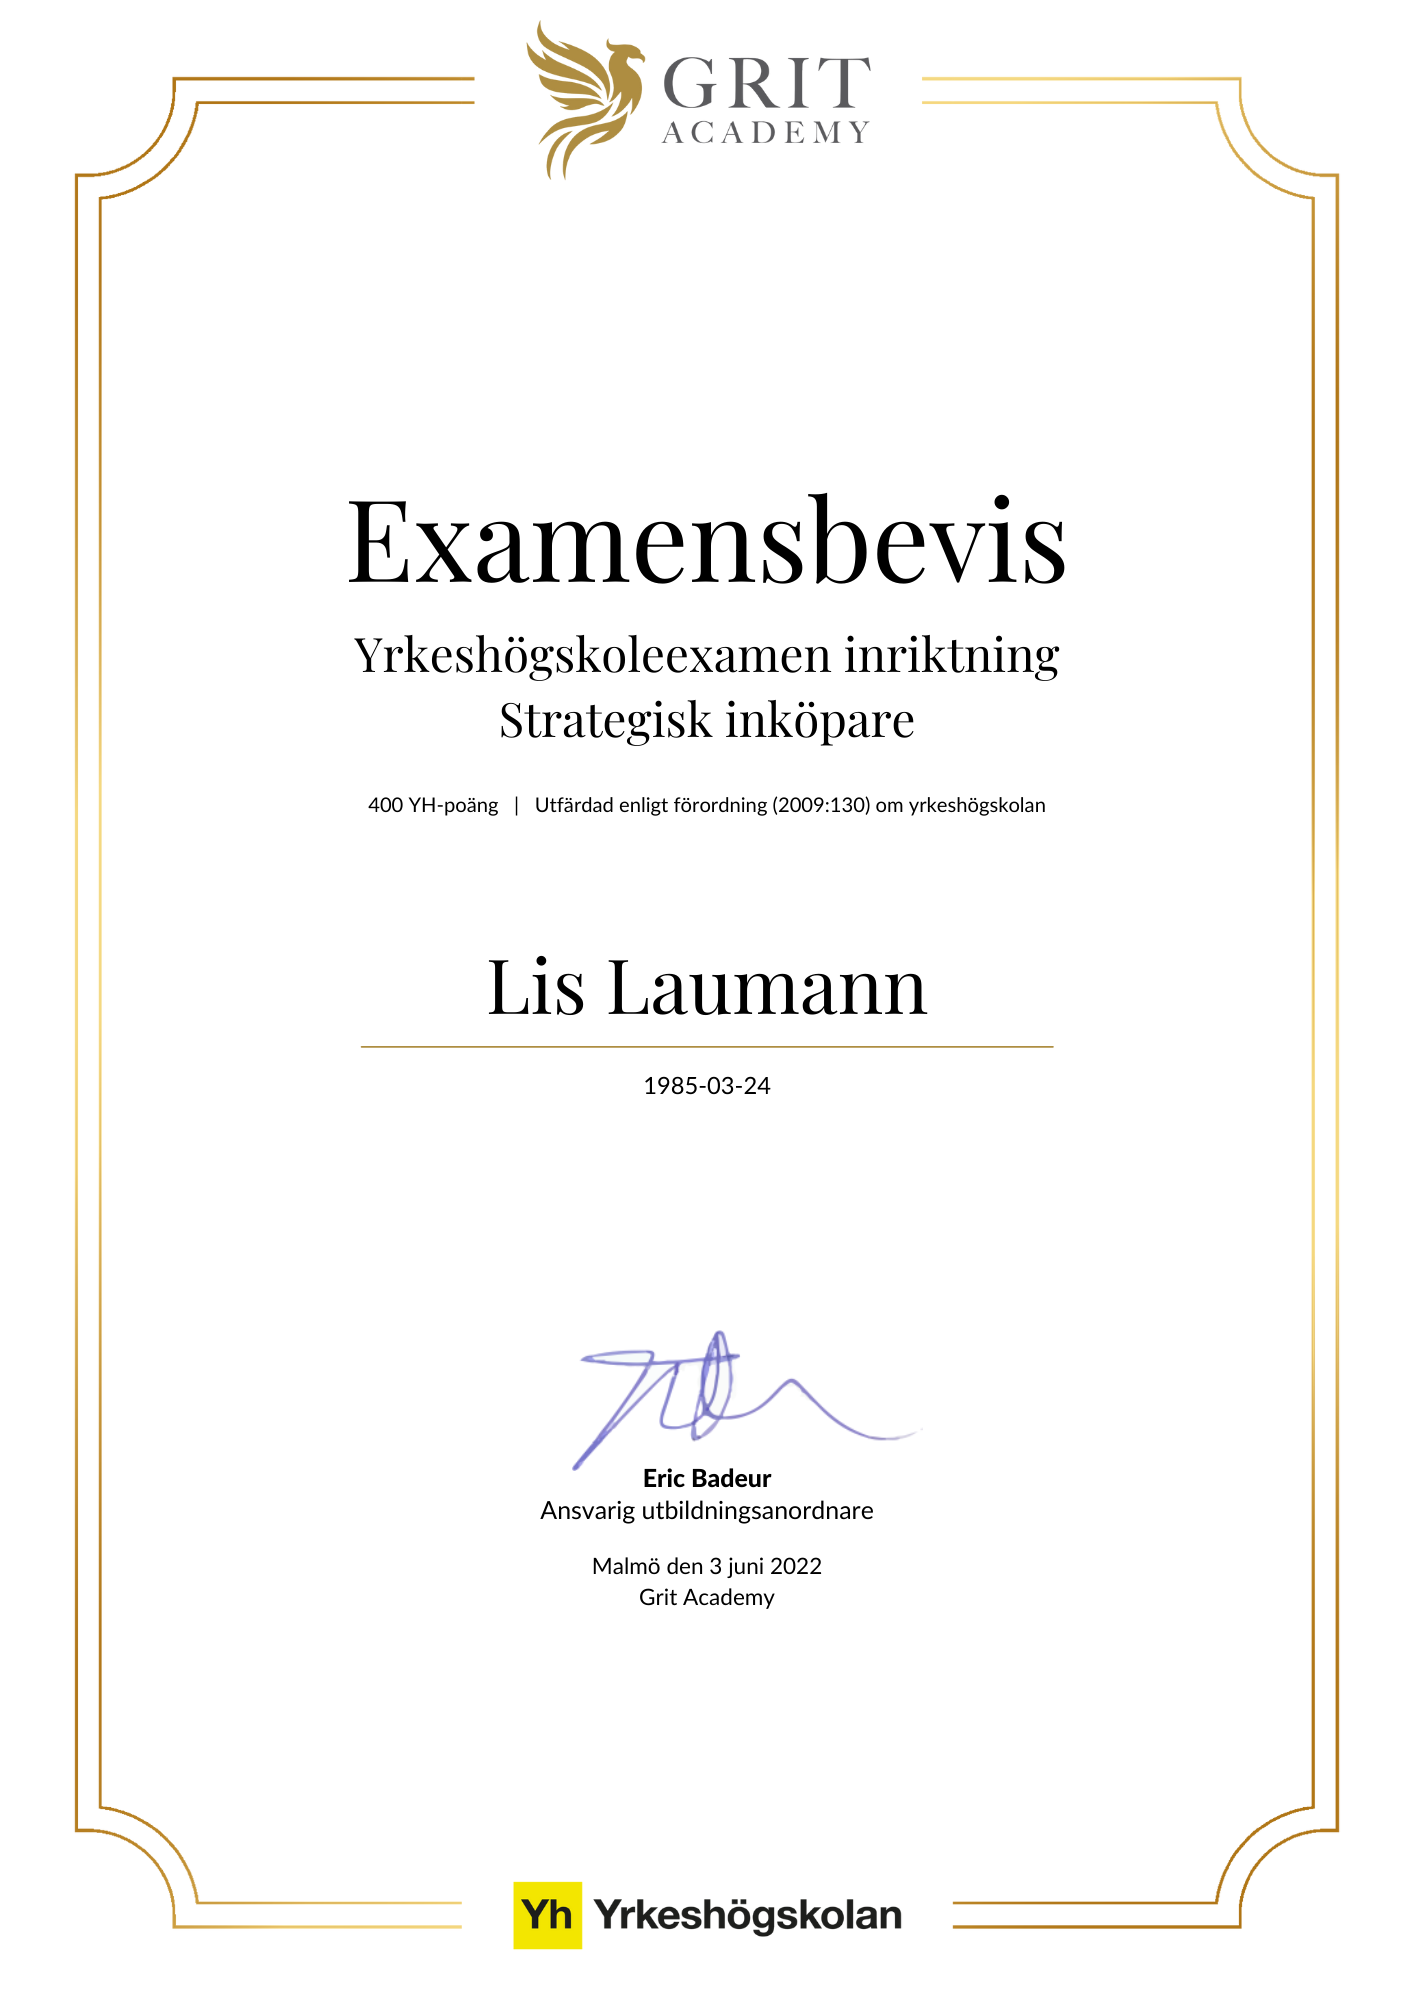 Examensbevis Lis Laumann - 1